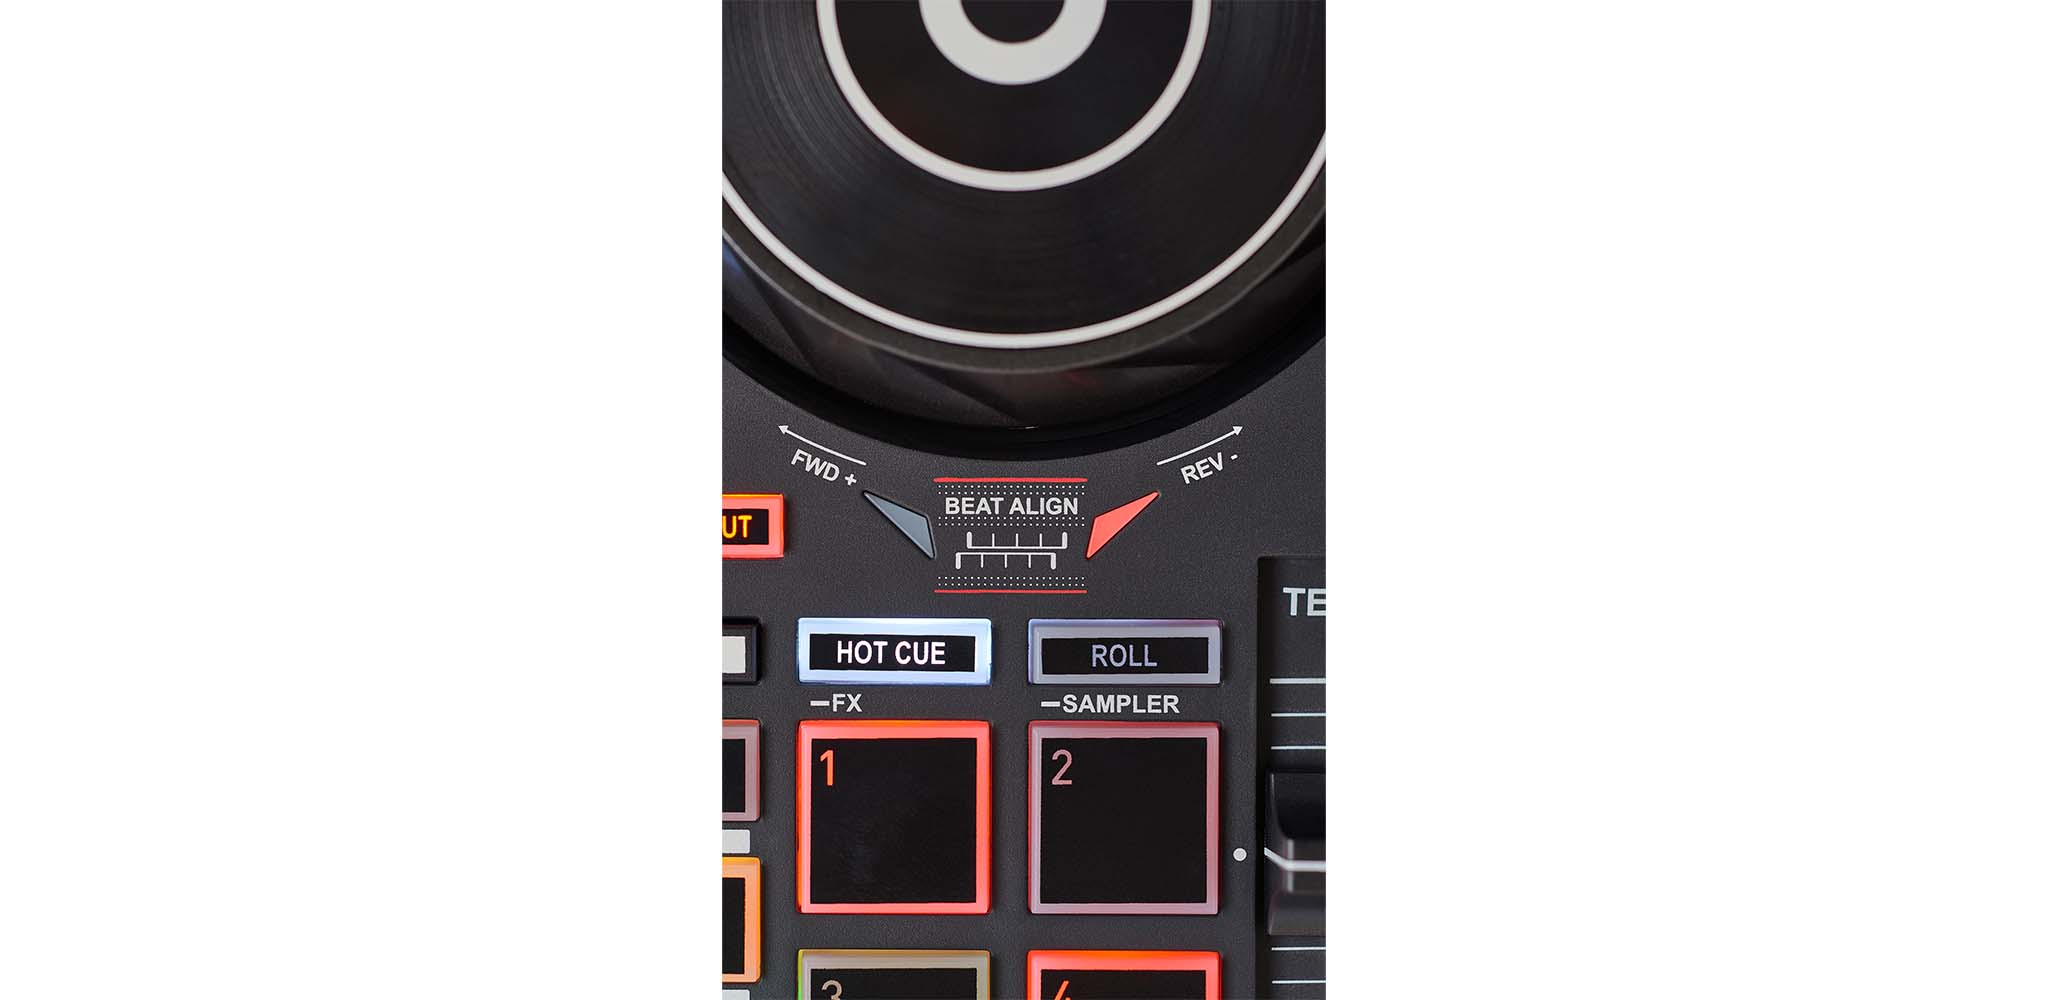 DJ Control Inpulse 200